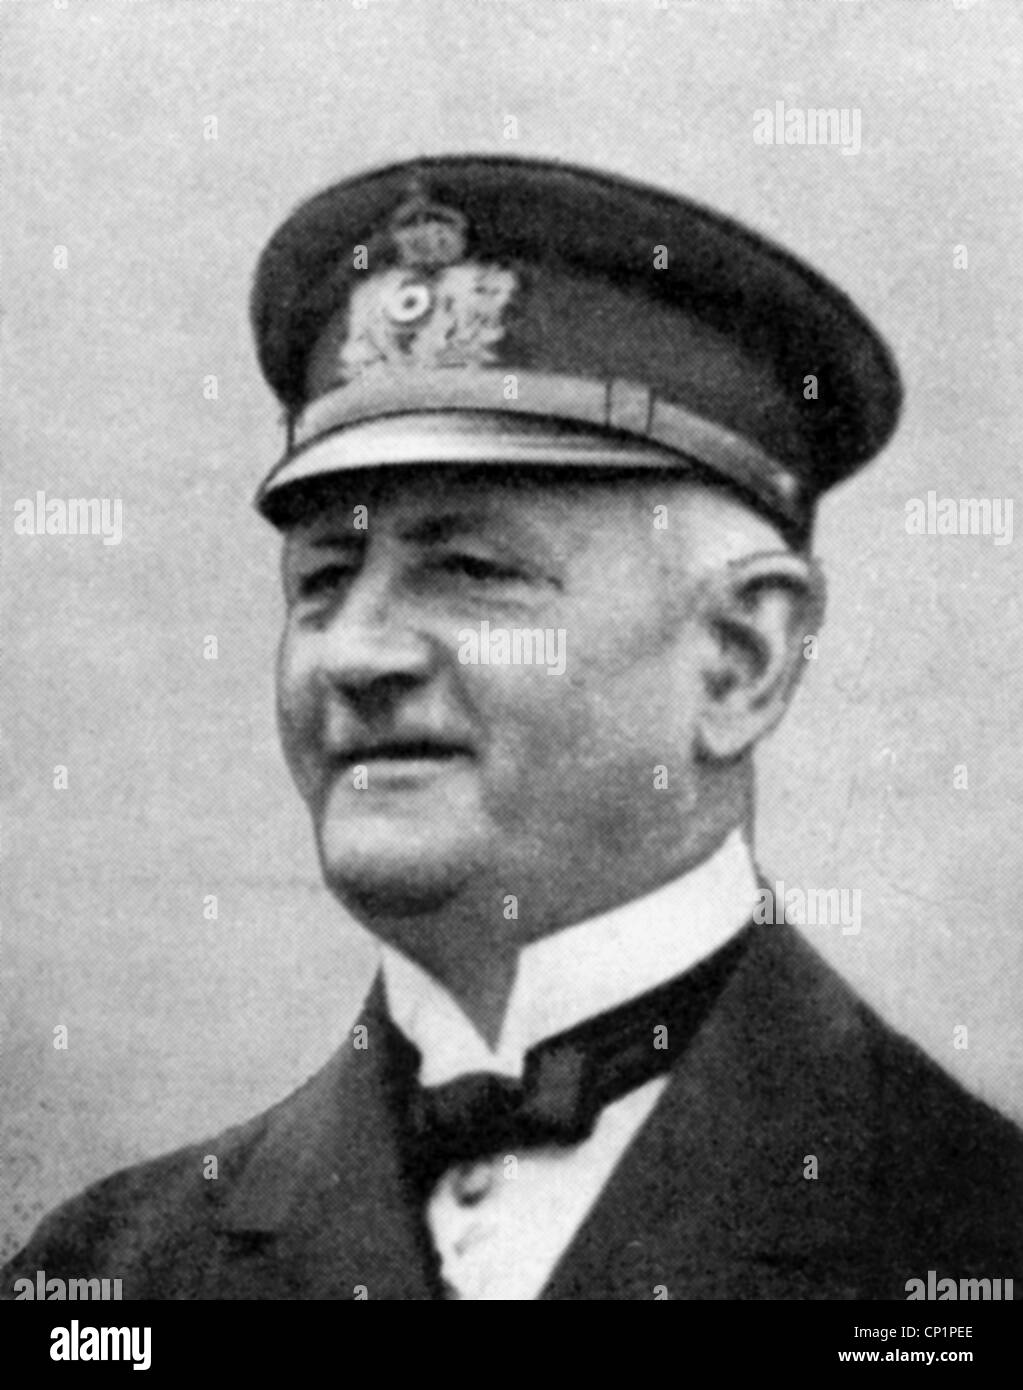 Reuter, Ludwig von, 9.2.1869 - 18.12.1943, German admiral, portrait, circa 1918, Stock Photo